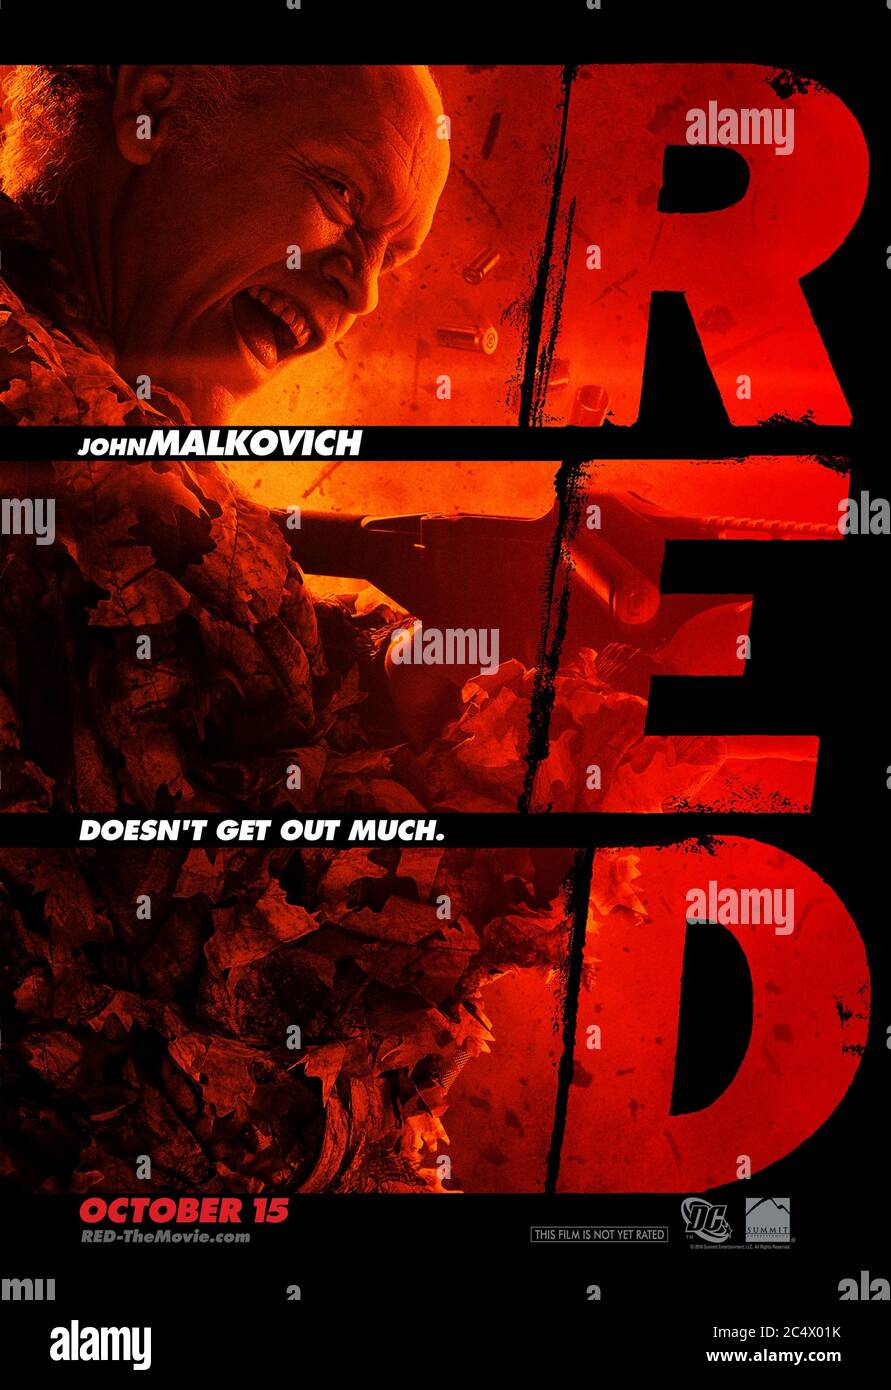 RED (2010) réalisé par Robert Schwentke et avec John Malkovich sous le nom de Marvin Boggs qui est 'R.E.D.' - retraité extrêmement dangereux, basé sur le livre DC Comic. Banque D'Images